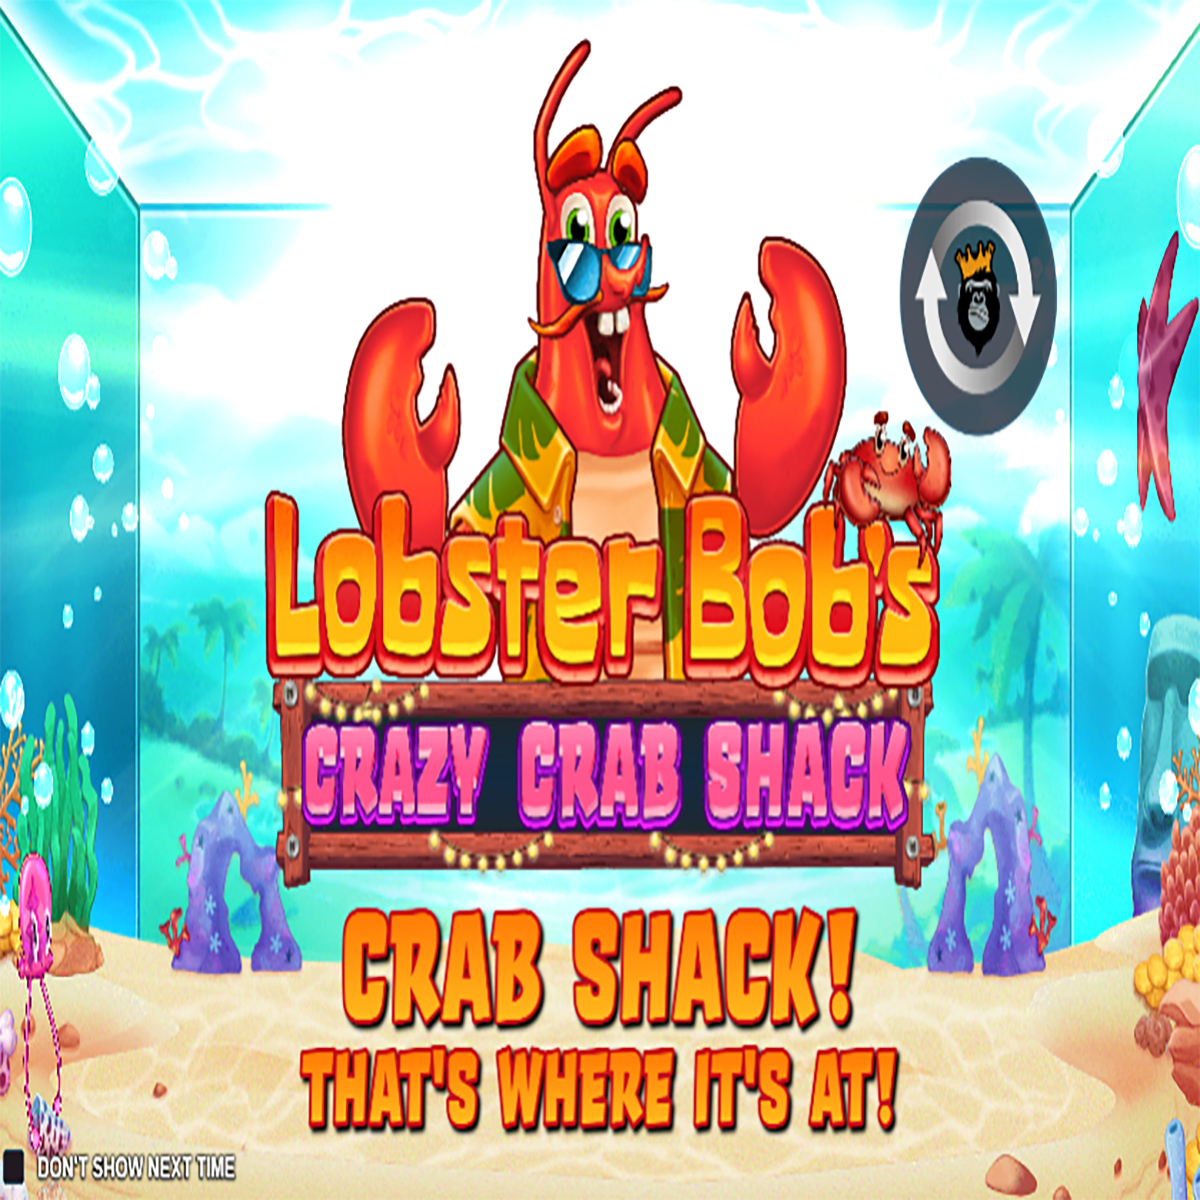 Lobster Bob’s Crazy Crab Shack Homescreen